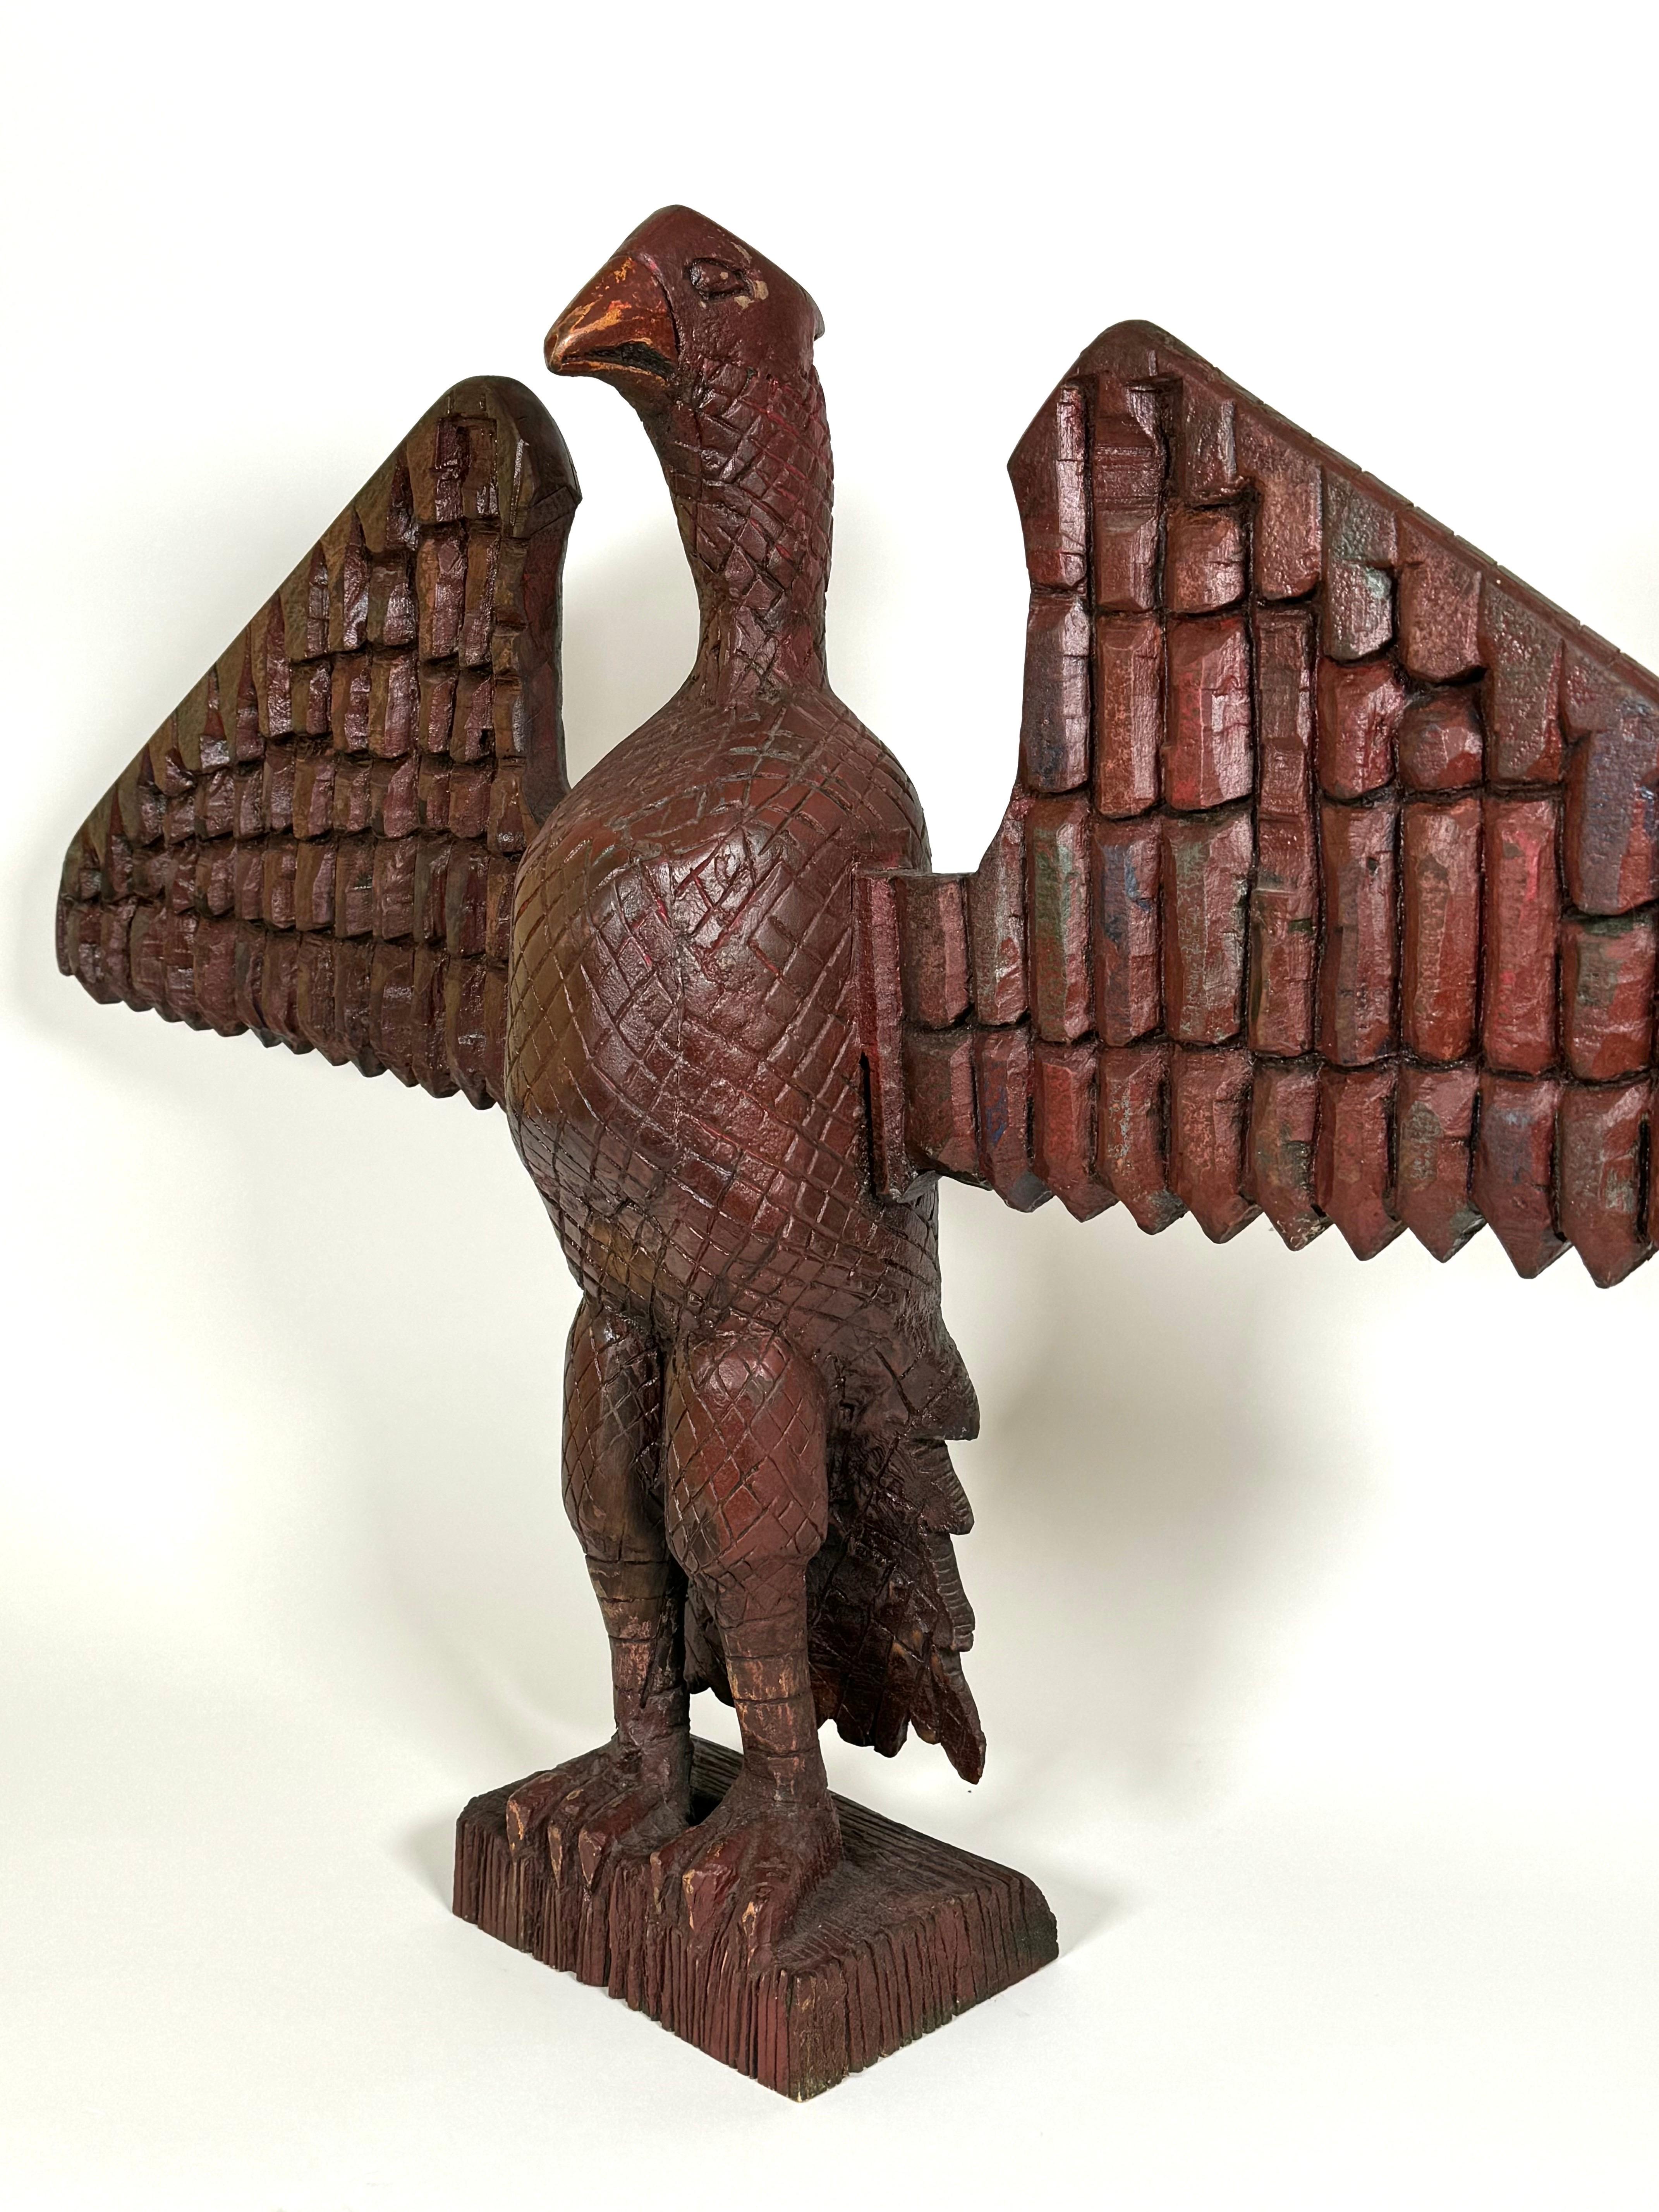 Anfang des 20. Jahrhunderts handgeschnitzter Holzadler mit roter Lackierung.  Der Adler hat ausgebreitete Flügel und eine aufrechte Haltung, die auf einem rechteckigen Holzsockel ruht. Aufwendige Schnitzereien an der gesamten Skulptur, die an die